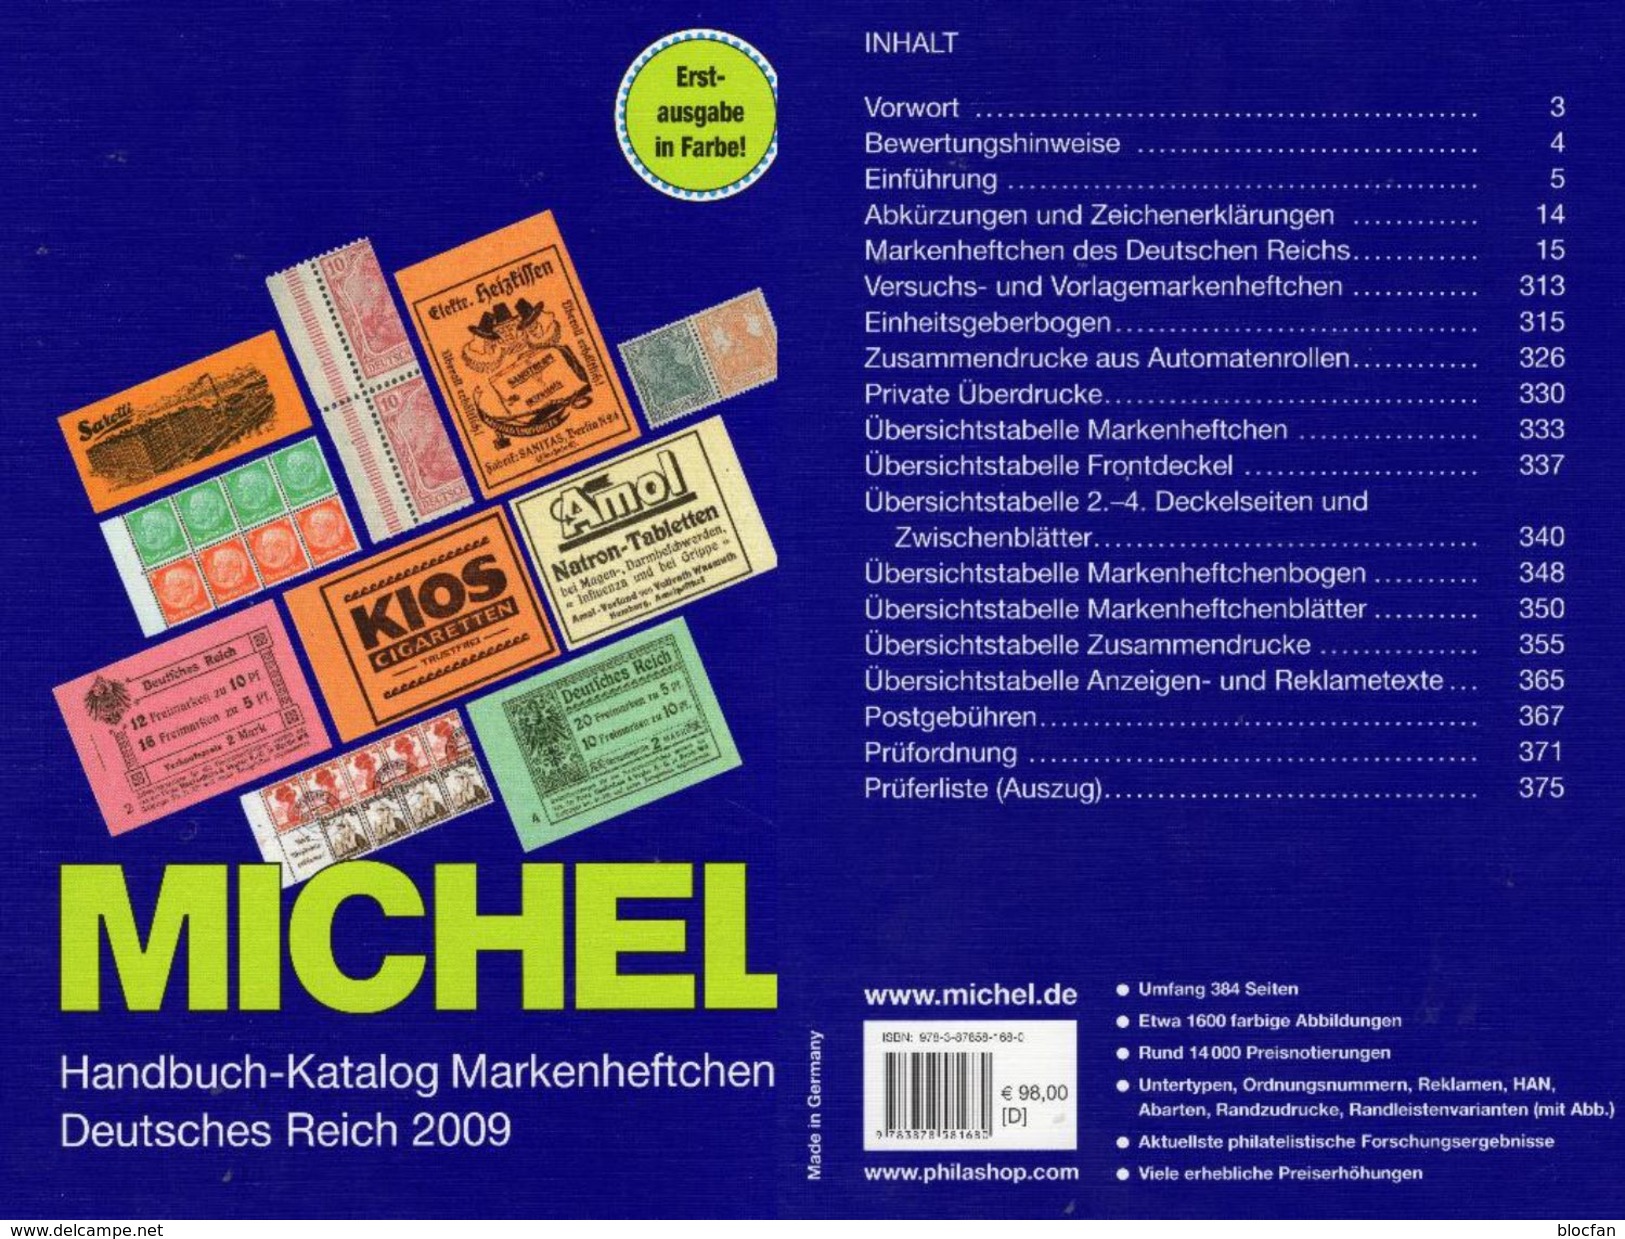 Deutsche Reich Markenheft MlCHEL Handbuch 2009 New 98€ Handbook With Special Carnets Booklets Catalogue Old Germany - Philatelie